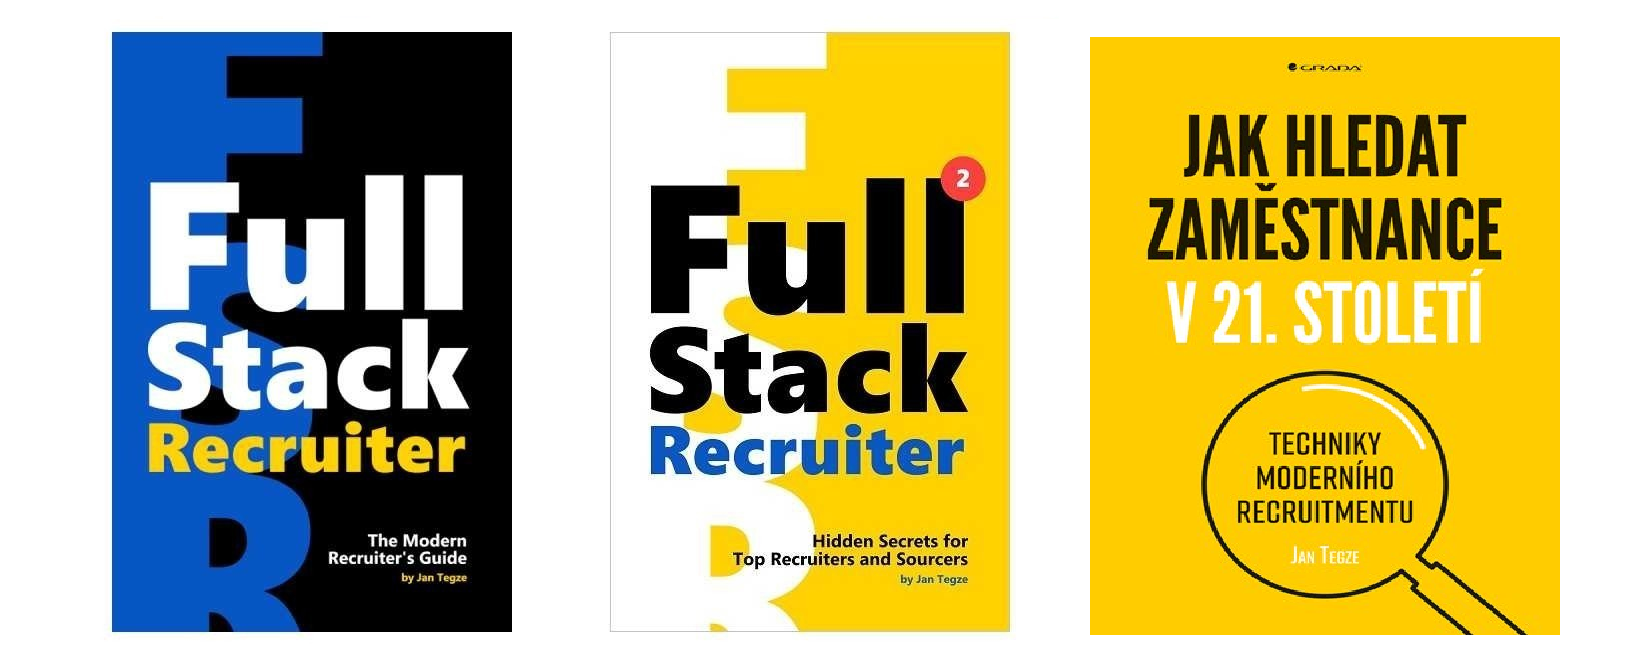 Full-Stack-Recruiter-New-Secrets-Revealed